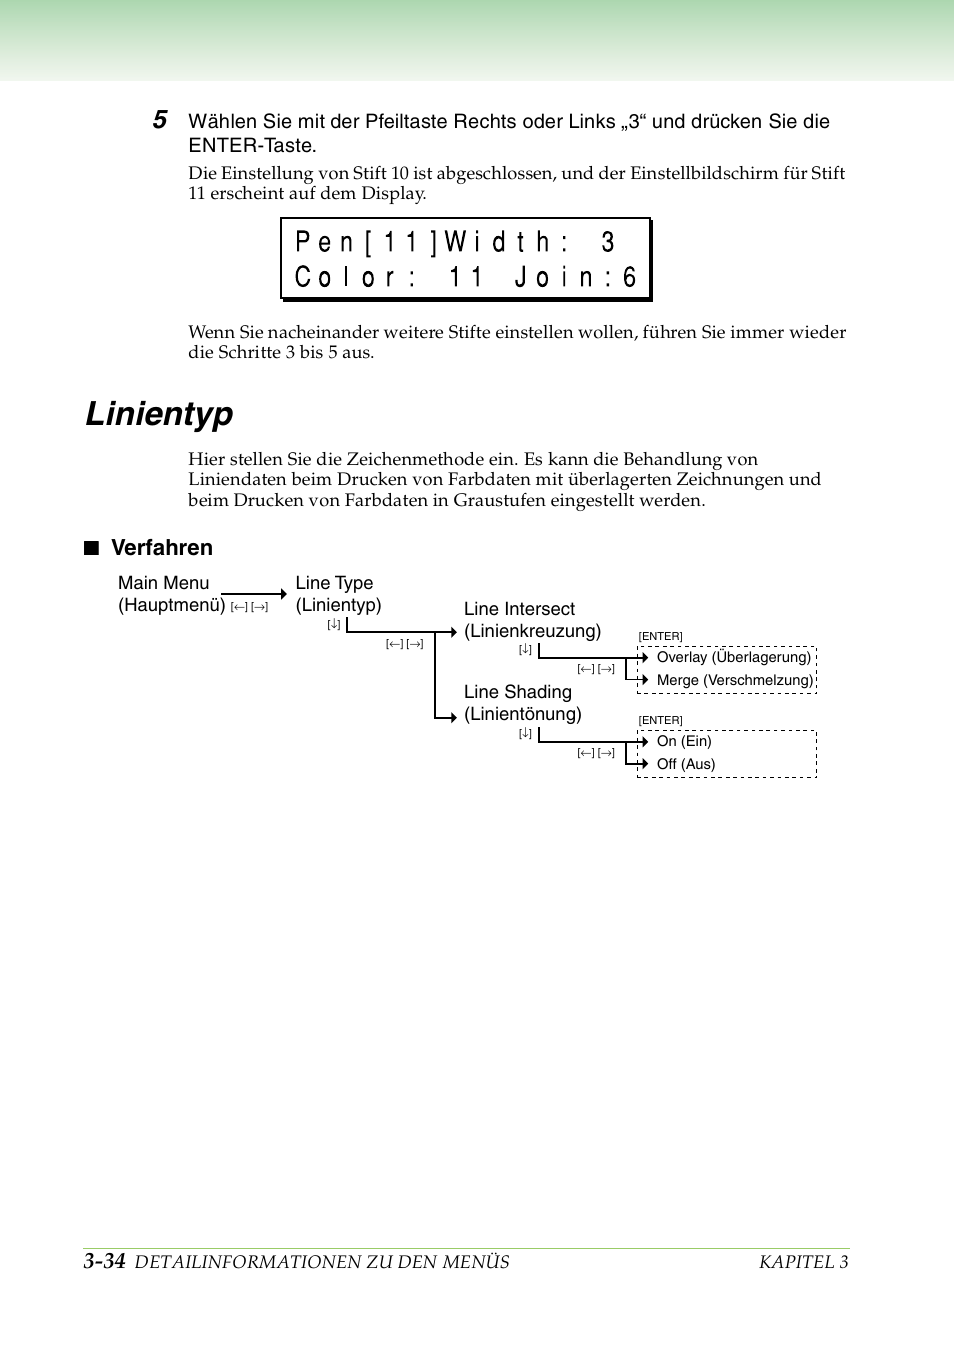 Linientyp, Verfahren, Linientyp -34 | Verfahren -34 | Canon BJ-W3000 Benutzerhandbuch | Seite 91 / 221